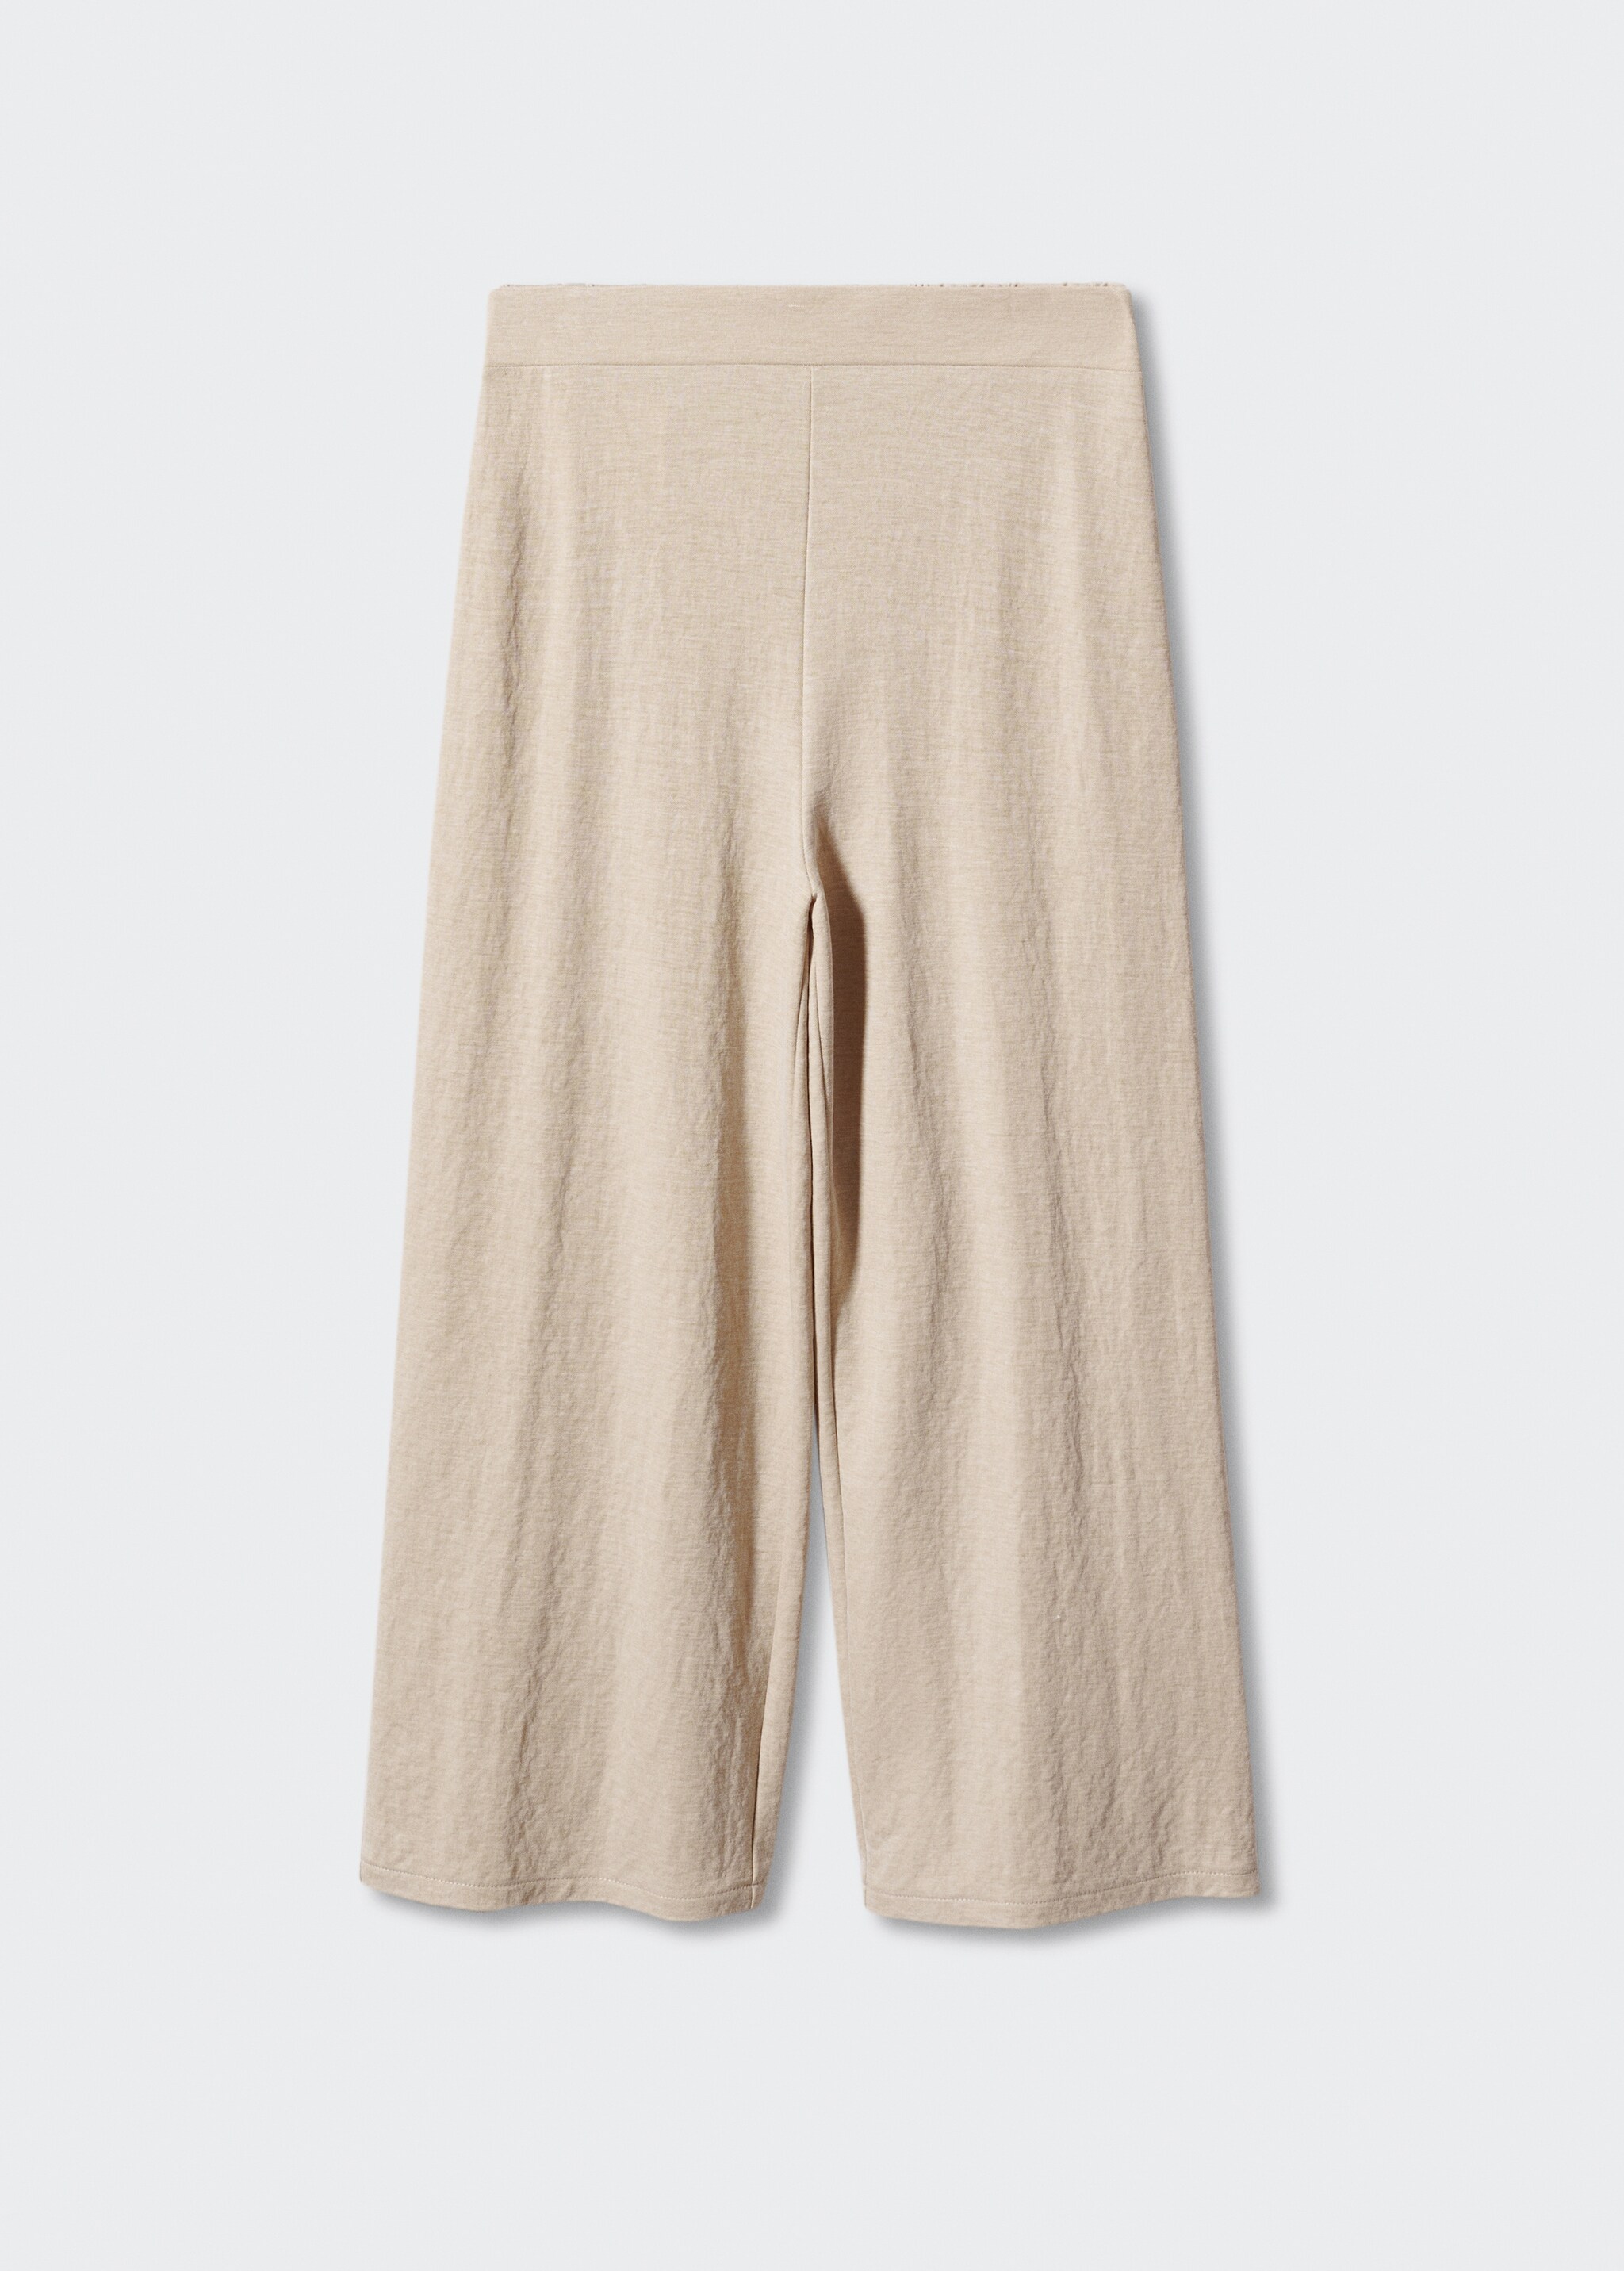 Pantalón culotte crop - Artículo sin modelo